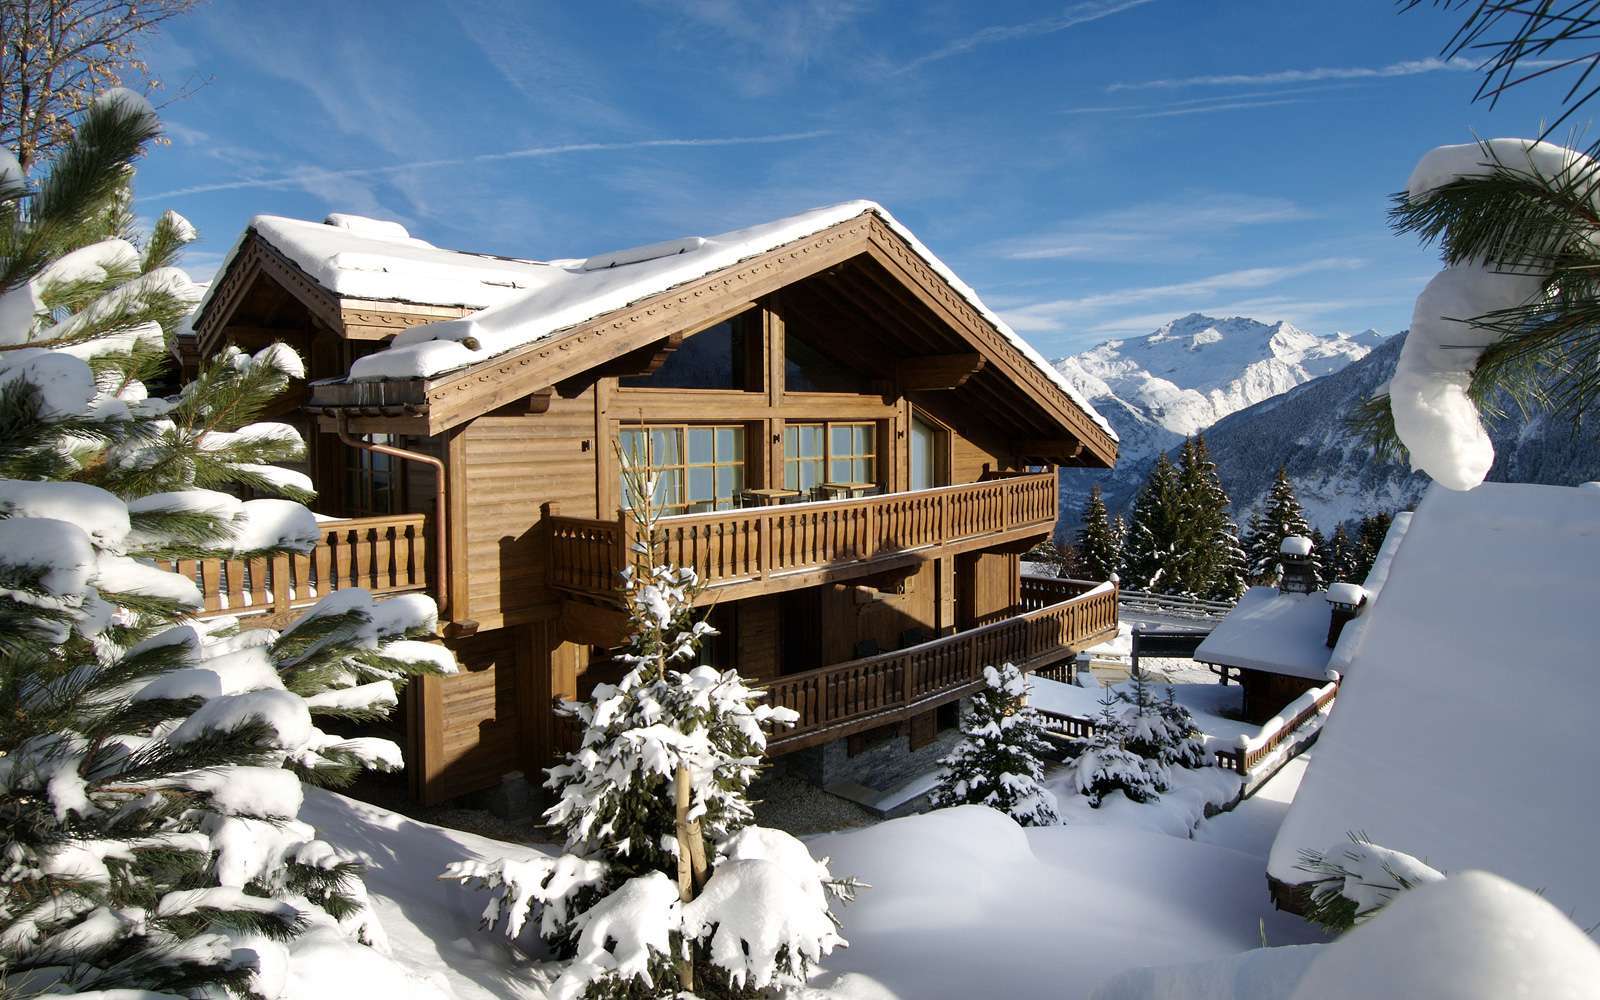 kings-avenue-luxury-chalet-courchevel-004-vista-frontal-exterior-con-nieve-y-cielo-azul